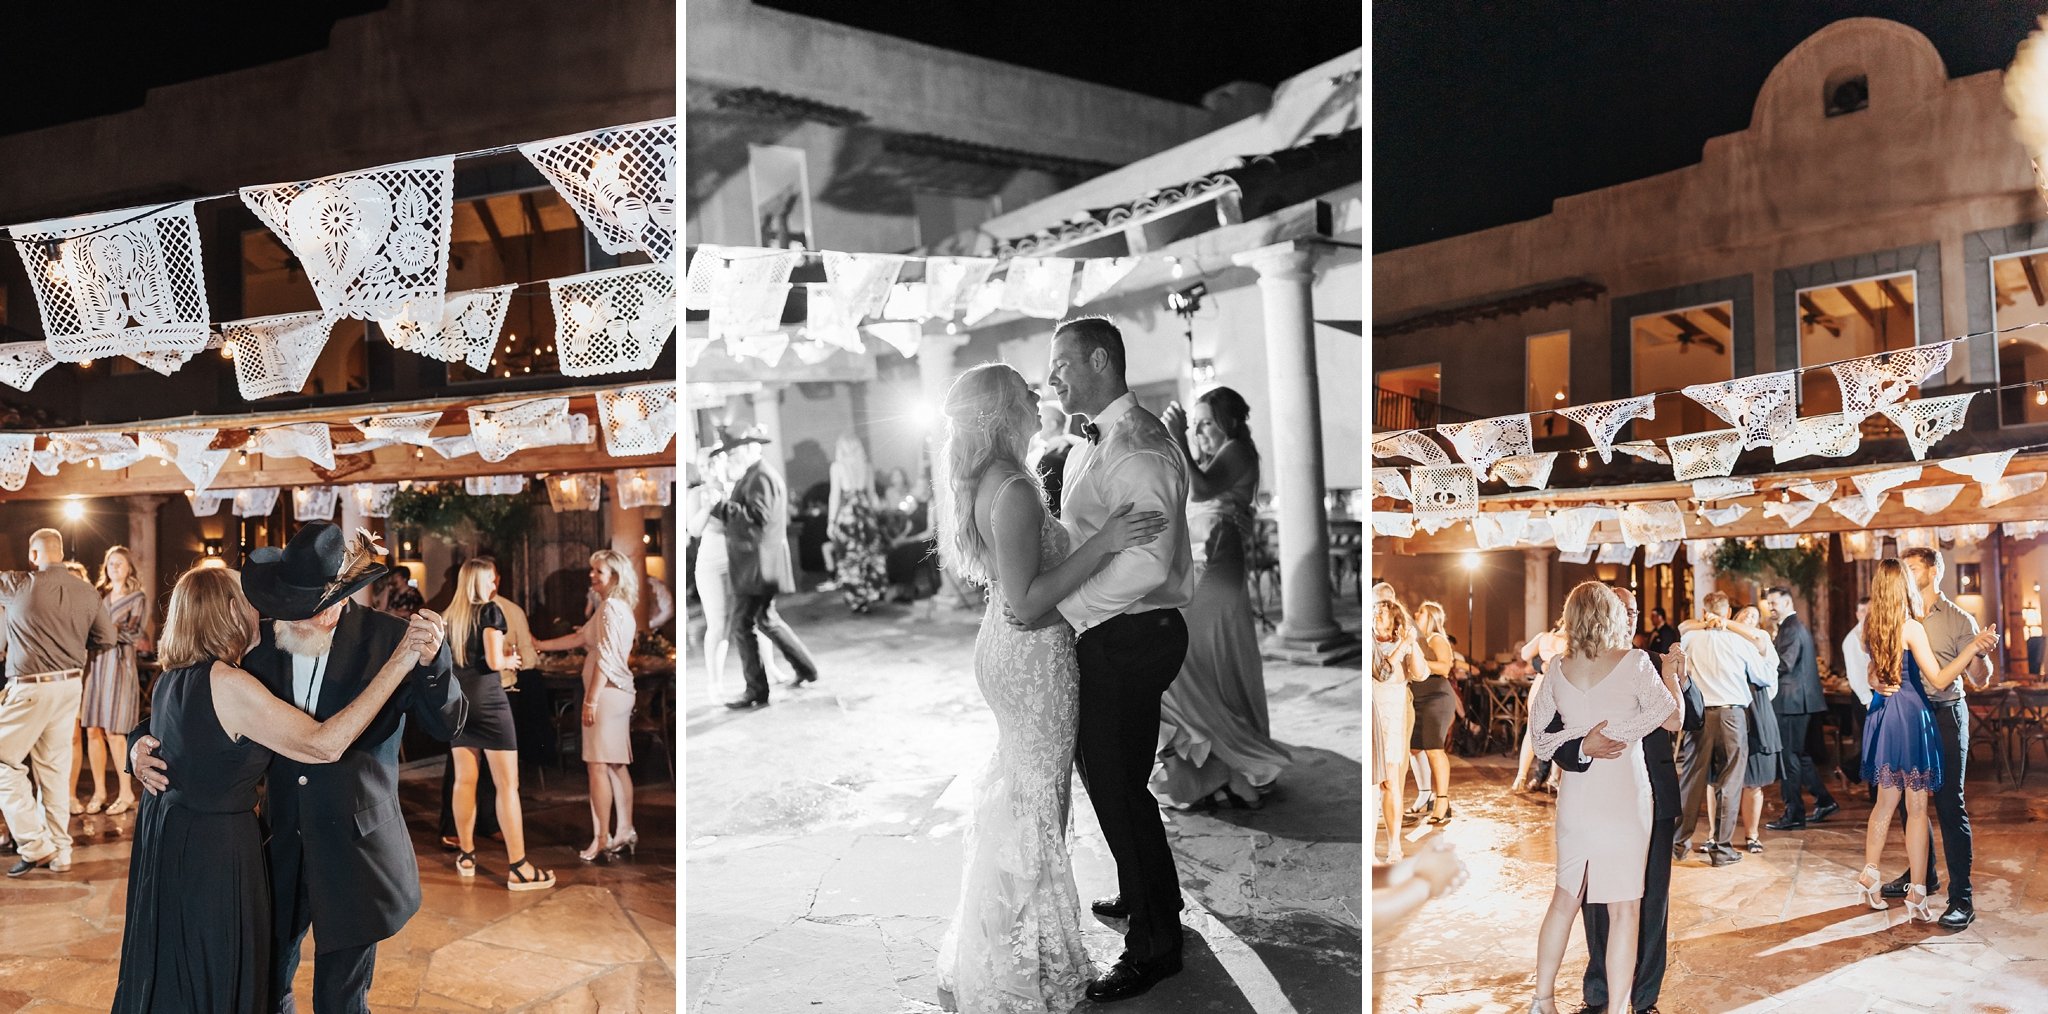 Alicia+lucia+photography+-+albuquerque+wedding+photographer+-+santa+fe+wedding+photography+-+new+mexico+wedding+photographer+-+new+mexico+wedding+-+santa+fe+wedding+-+hacienda+wedding+-+hacienda+dona+andrea+wedding_0166.jpg